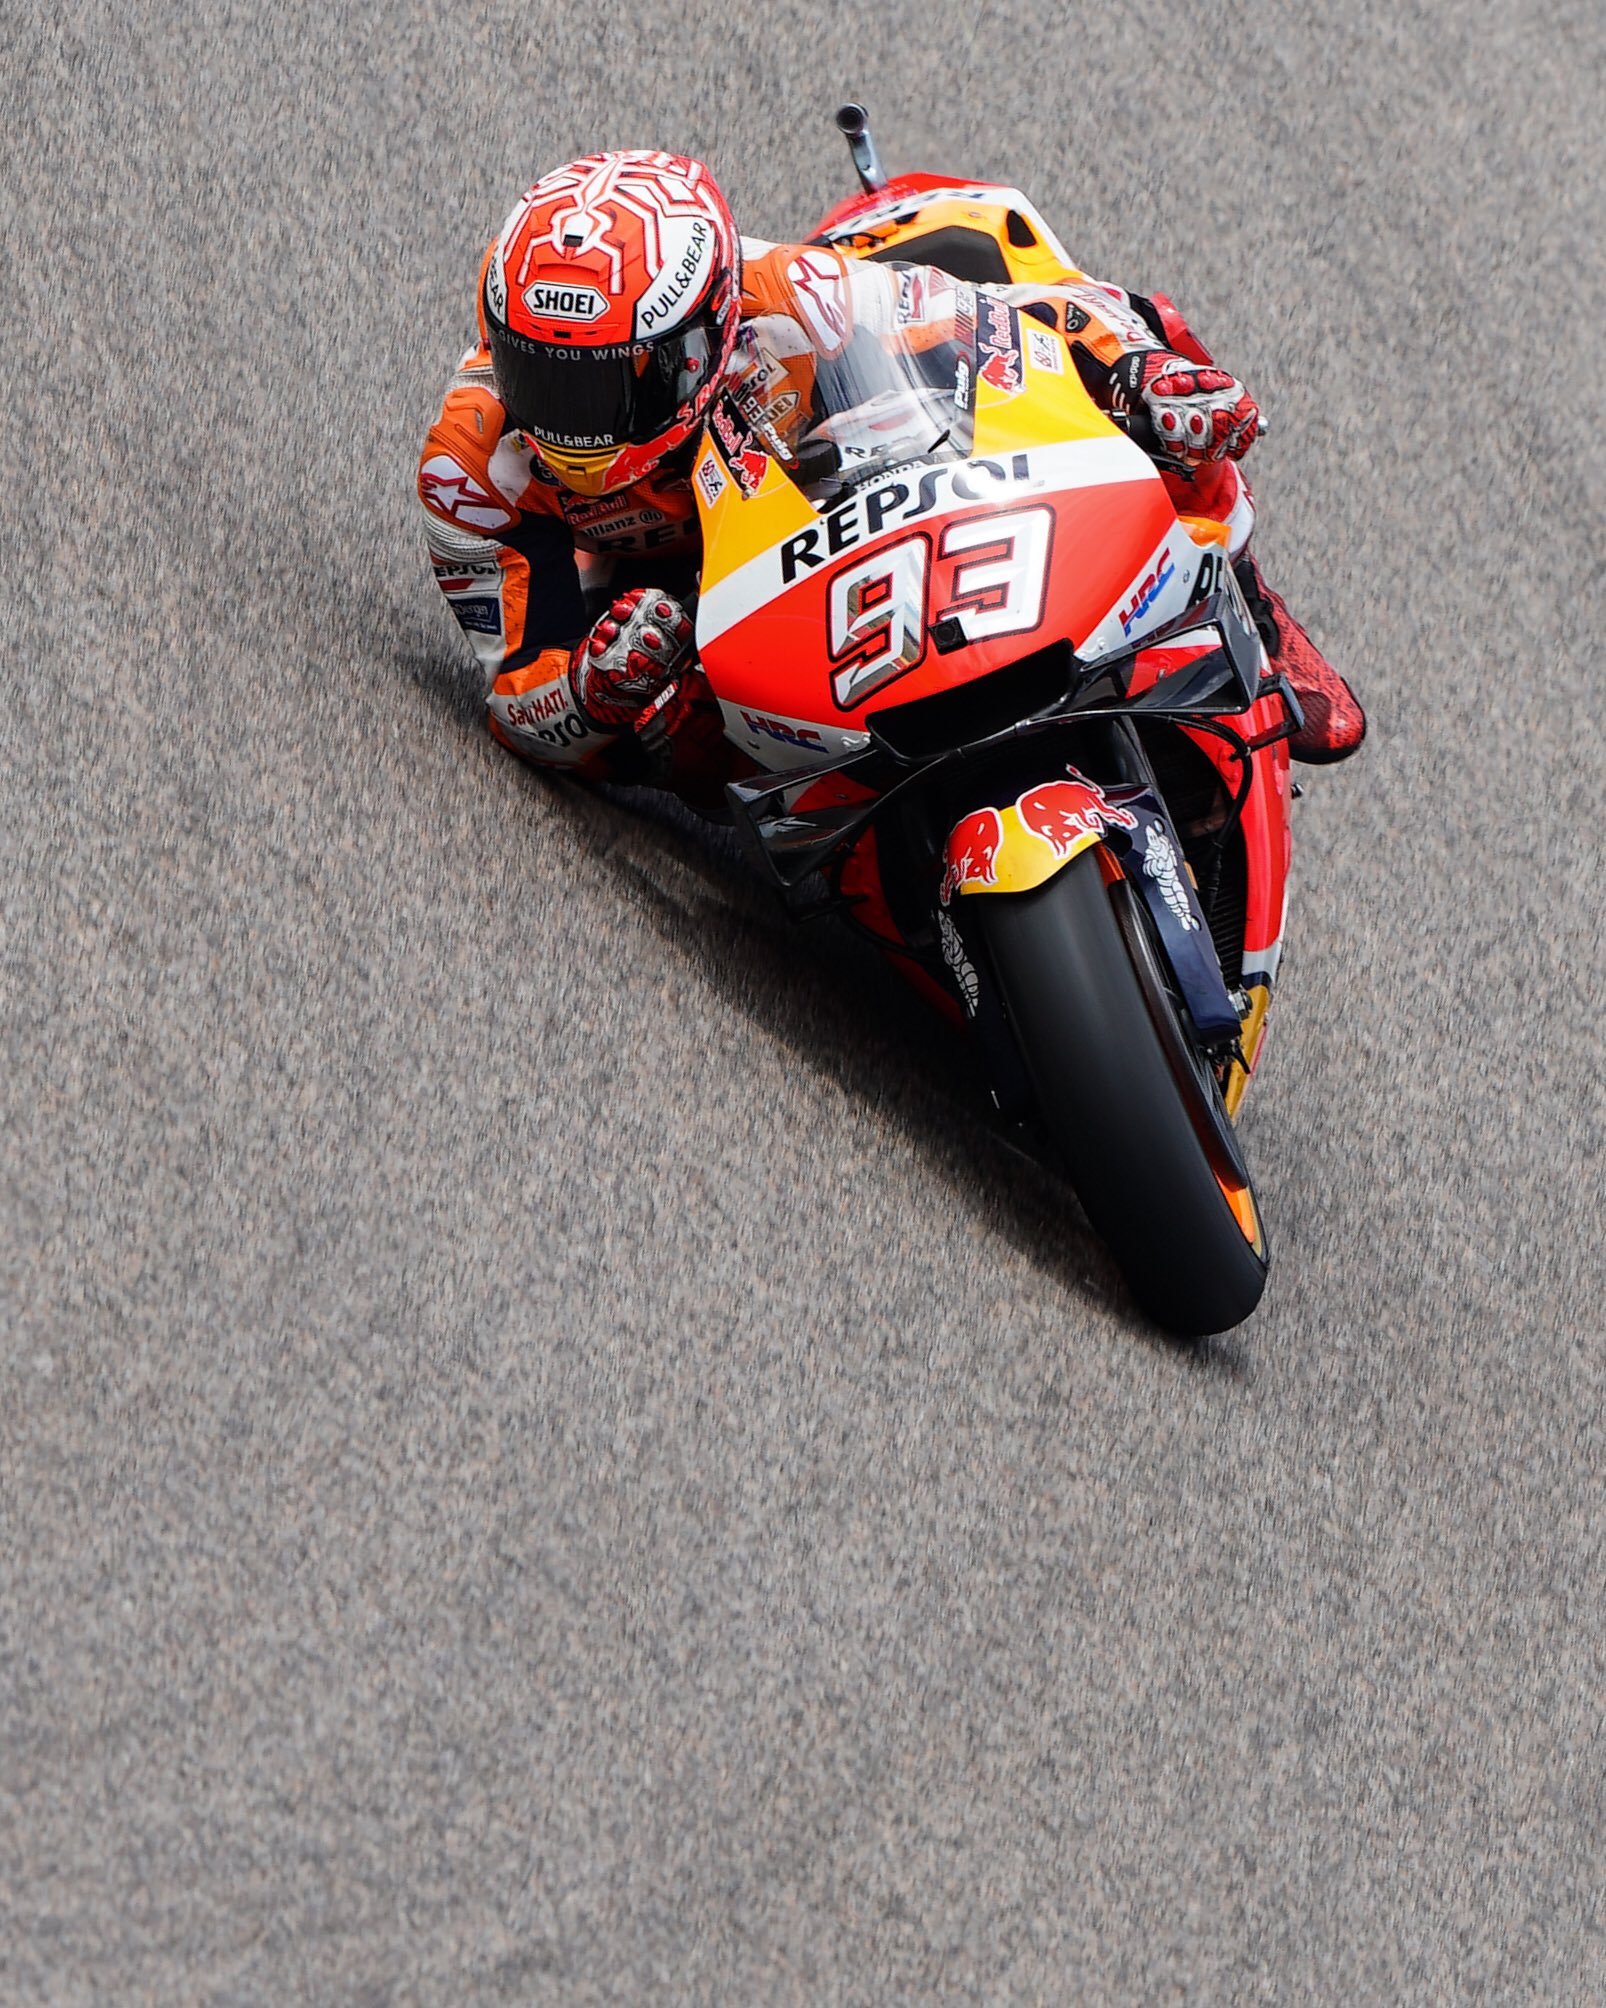 Rider Honda, Marc Marquez menjadi yang tercepat di kualifikasi MotoGP Jerman. (Foto: Twitter/@marcmarquez93)